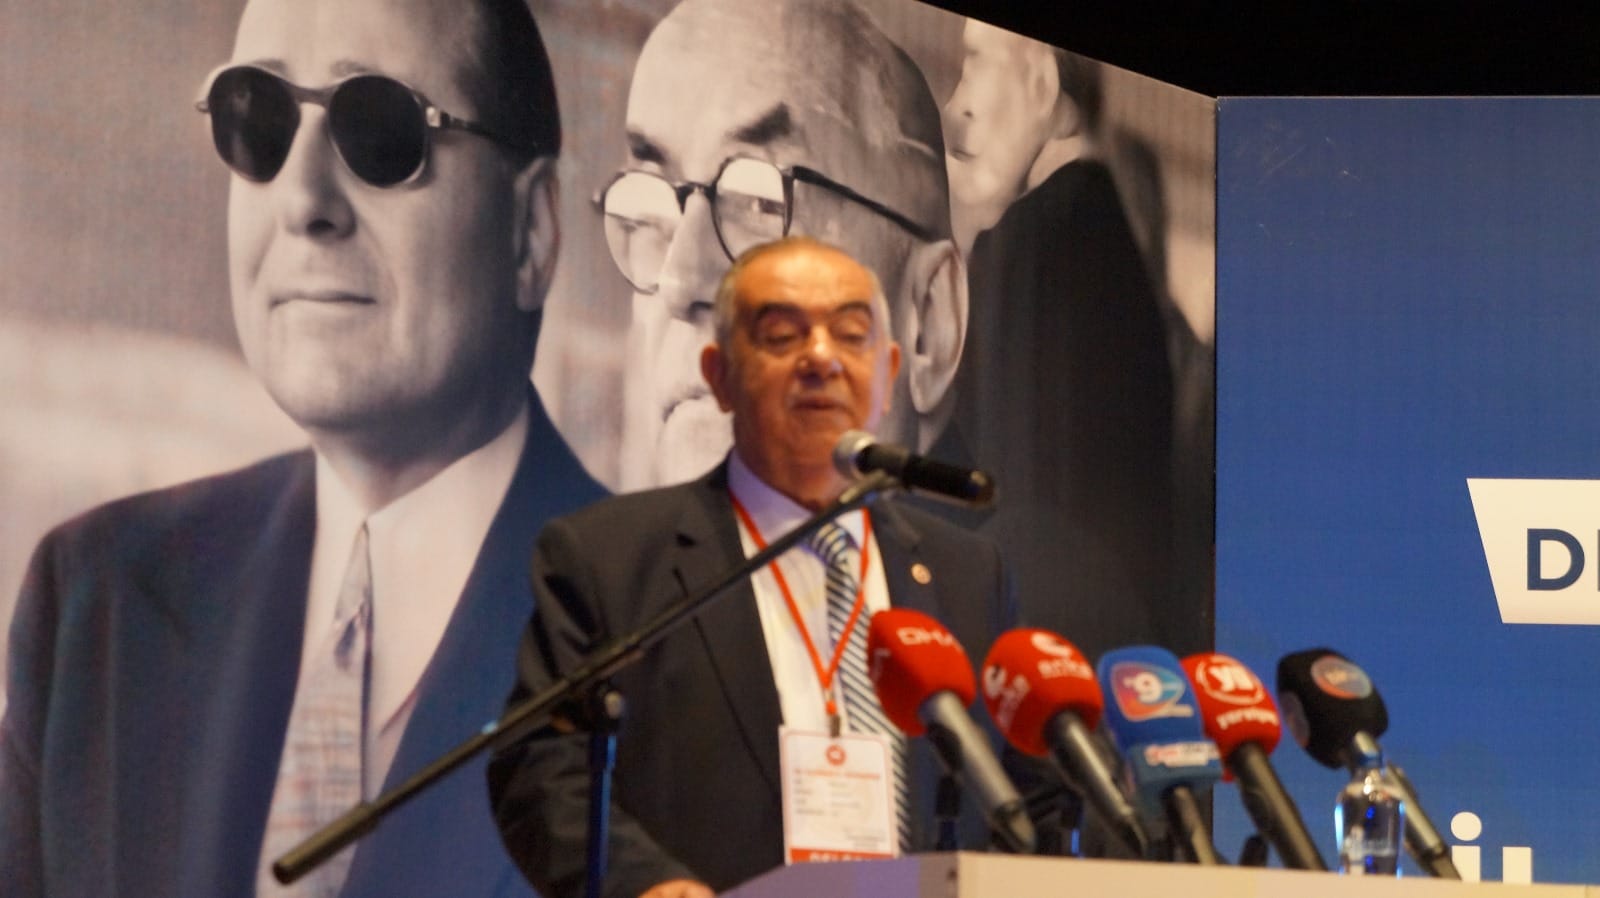 İzmir Demokrat Partisi İl Başkanlığı'nda sert söylemler: Milli Eğitim Bakanı tarikat ve cemaatleri eleştirildi.